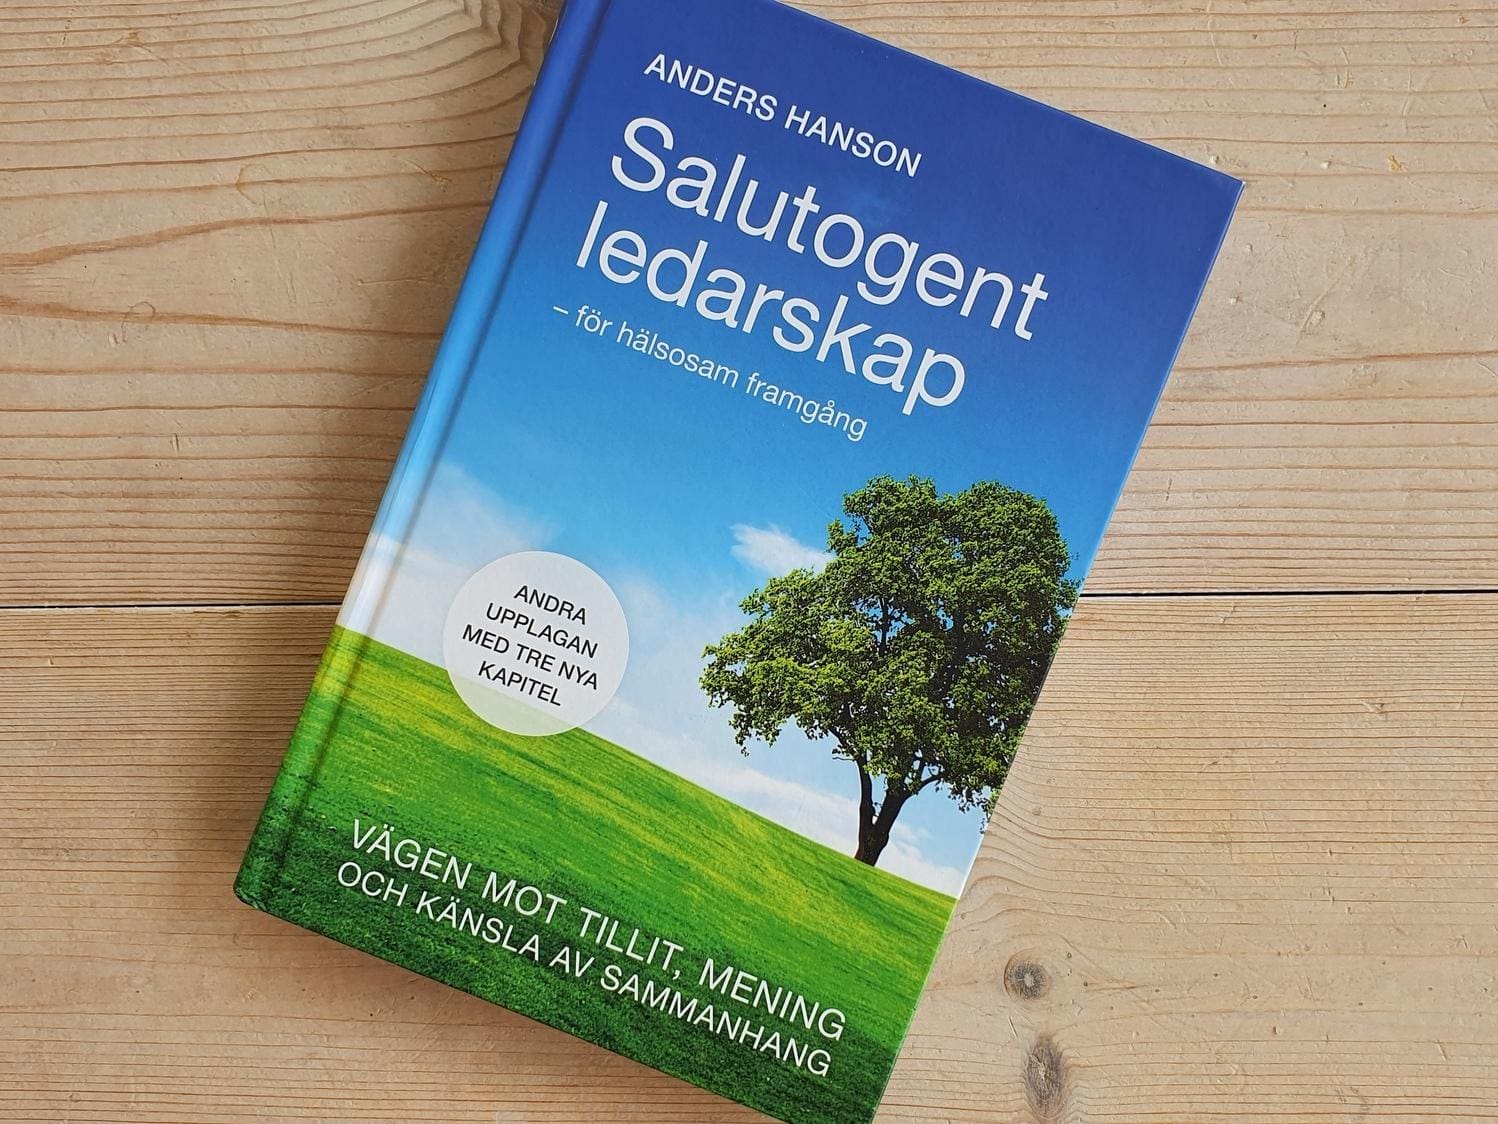 Bild av boken Salutogent ledarskap - för hälsosam framgång av Anders Hanson. På boken en bild av ett fält med grönt gräs och ett stort träd. Bakom och ovanför trädet en blå himmel.